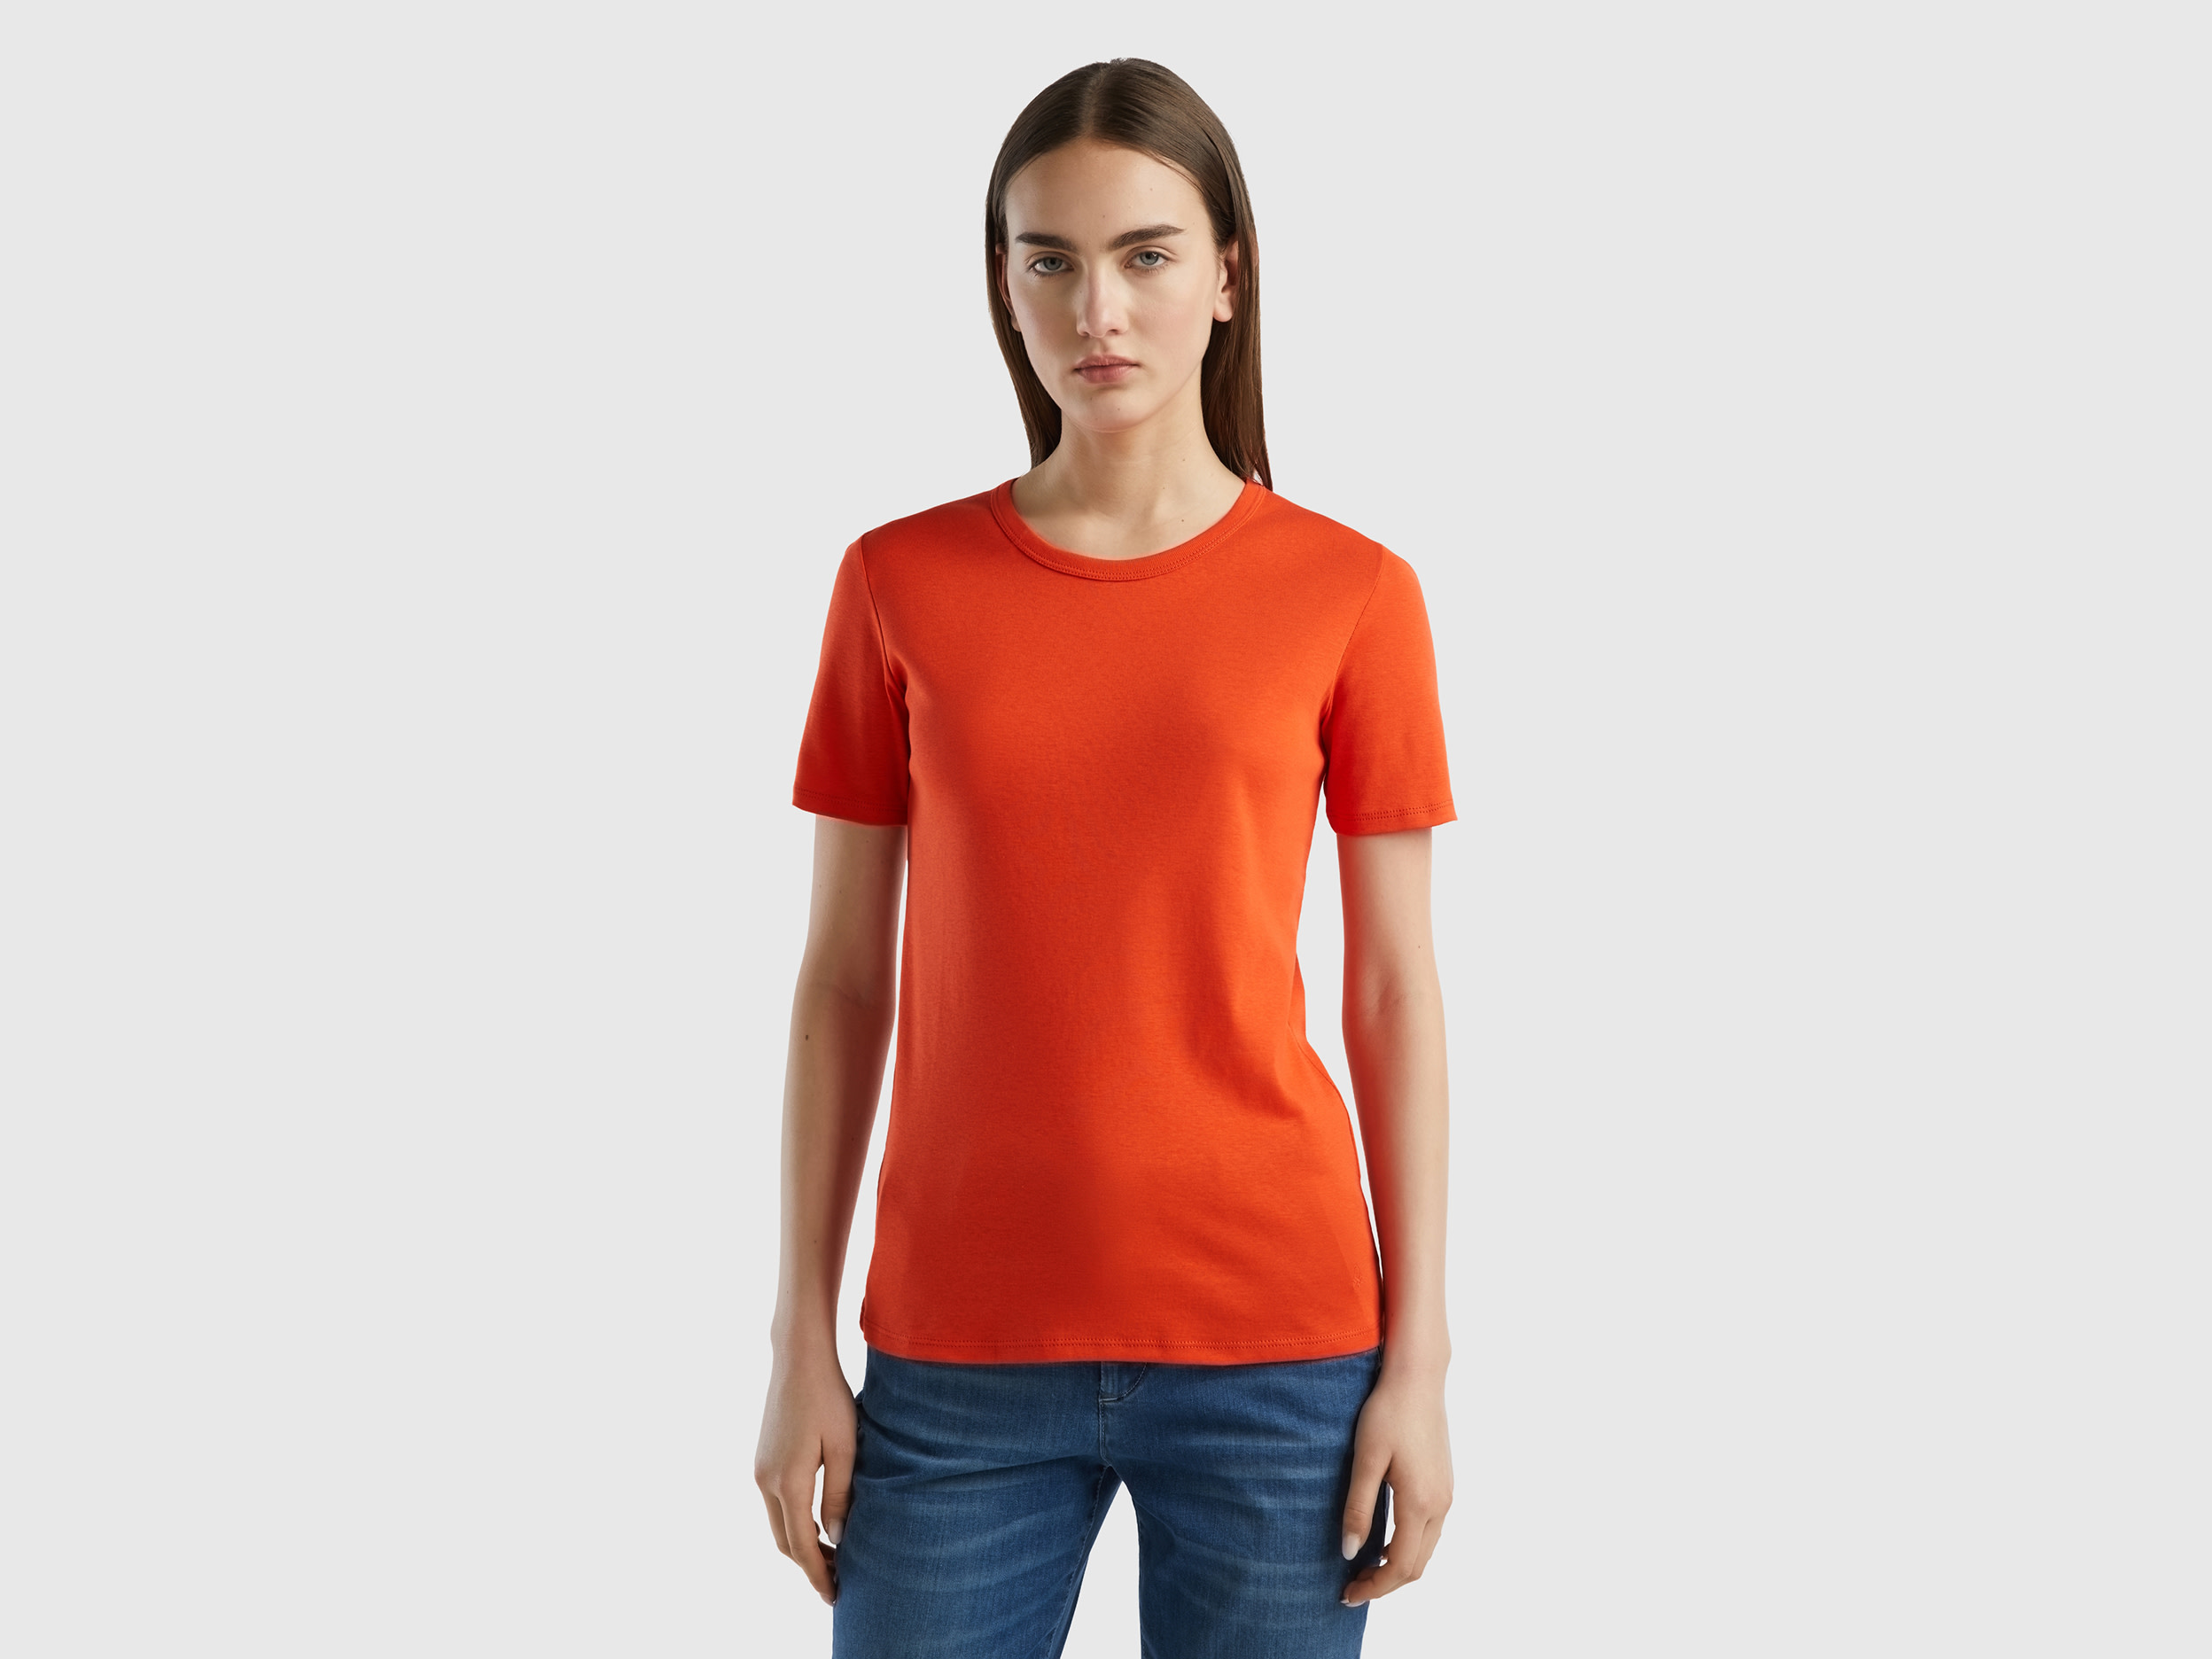 Benetton, Long Fiber Cotton T-shirt, size M, Red, Women